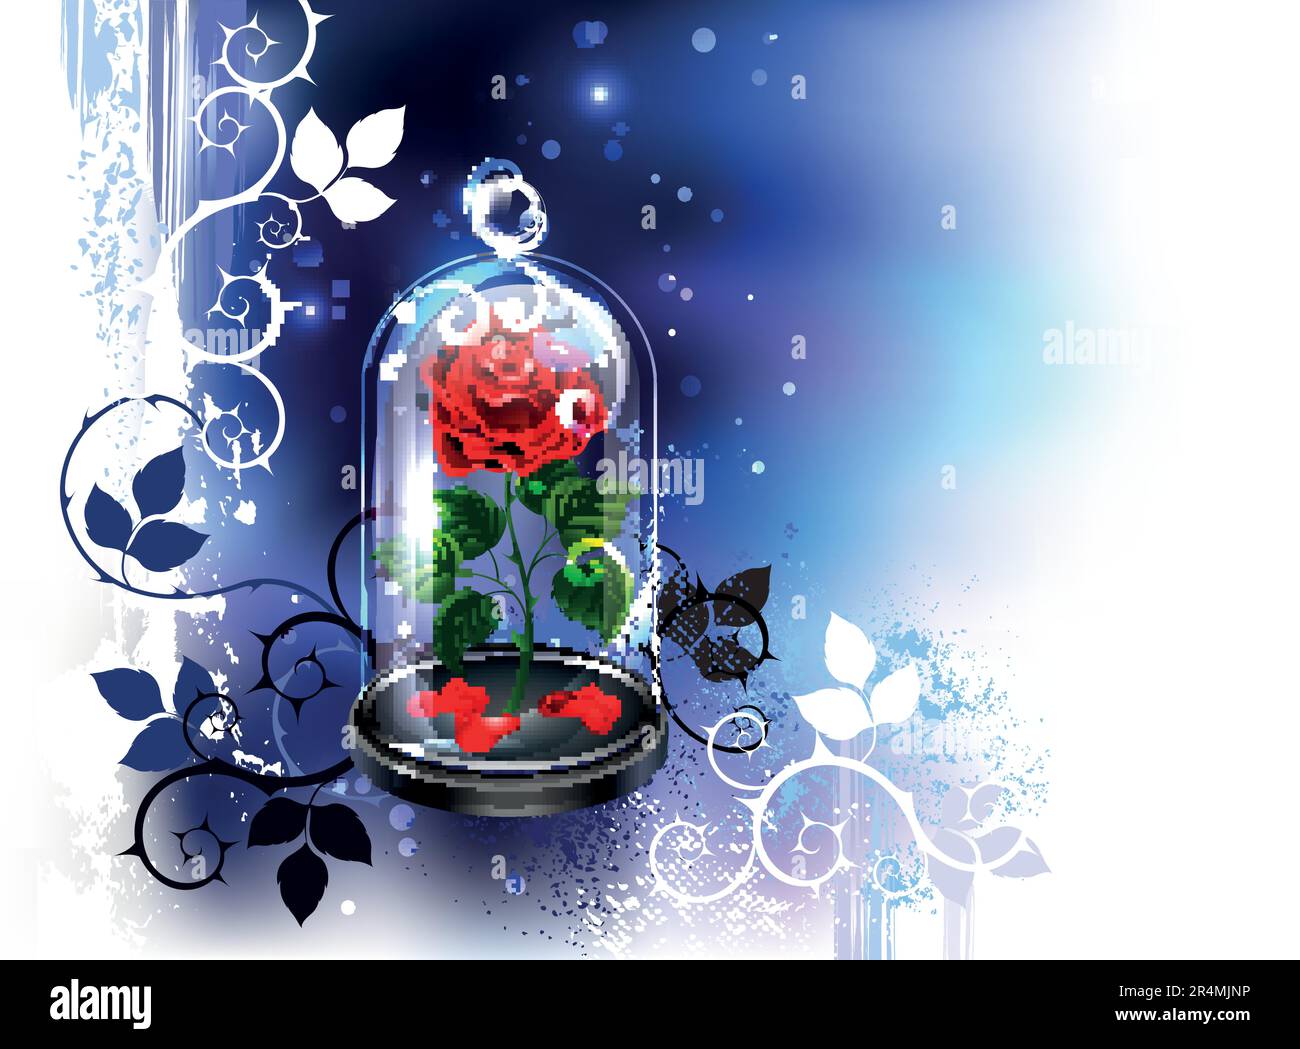 Dôme transparent en verre avec rose rouge peint artistiquement sur fond bleu nocturne peint avec des taches de peinture blanche. Beauté de la rose rouge. Illustration de Vecteur